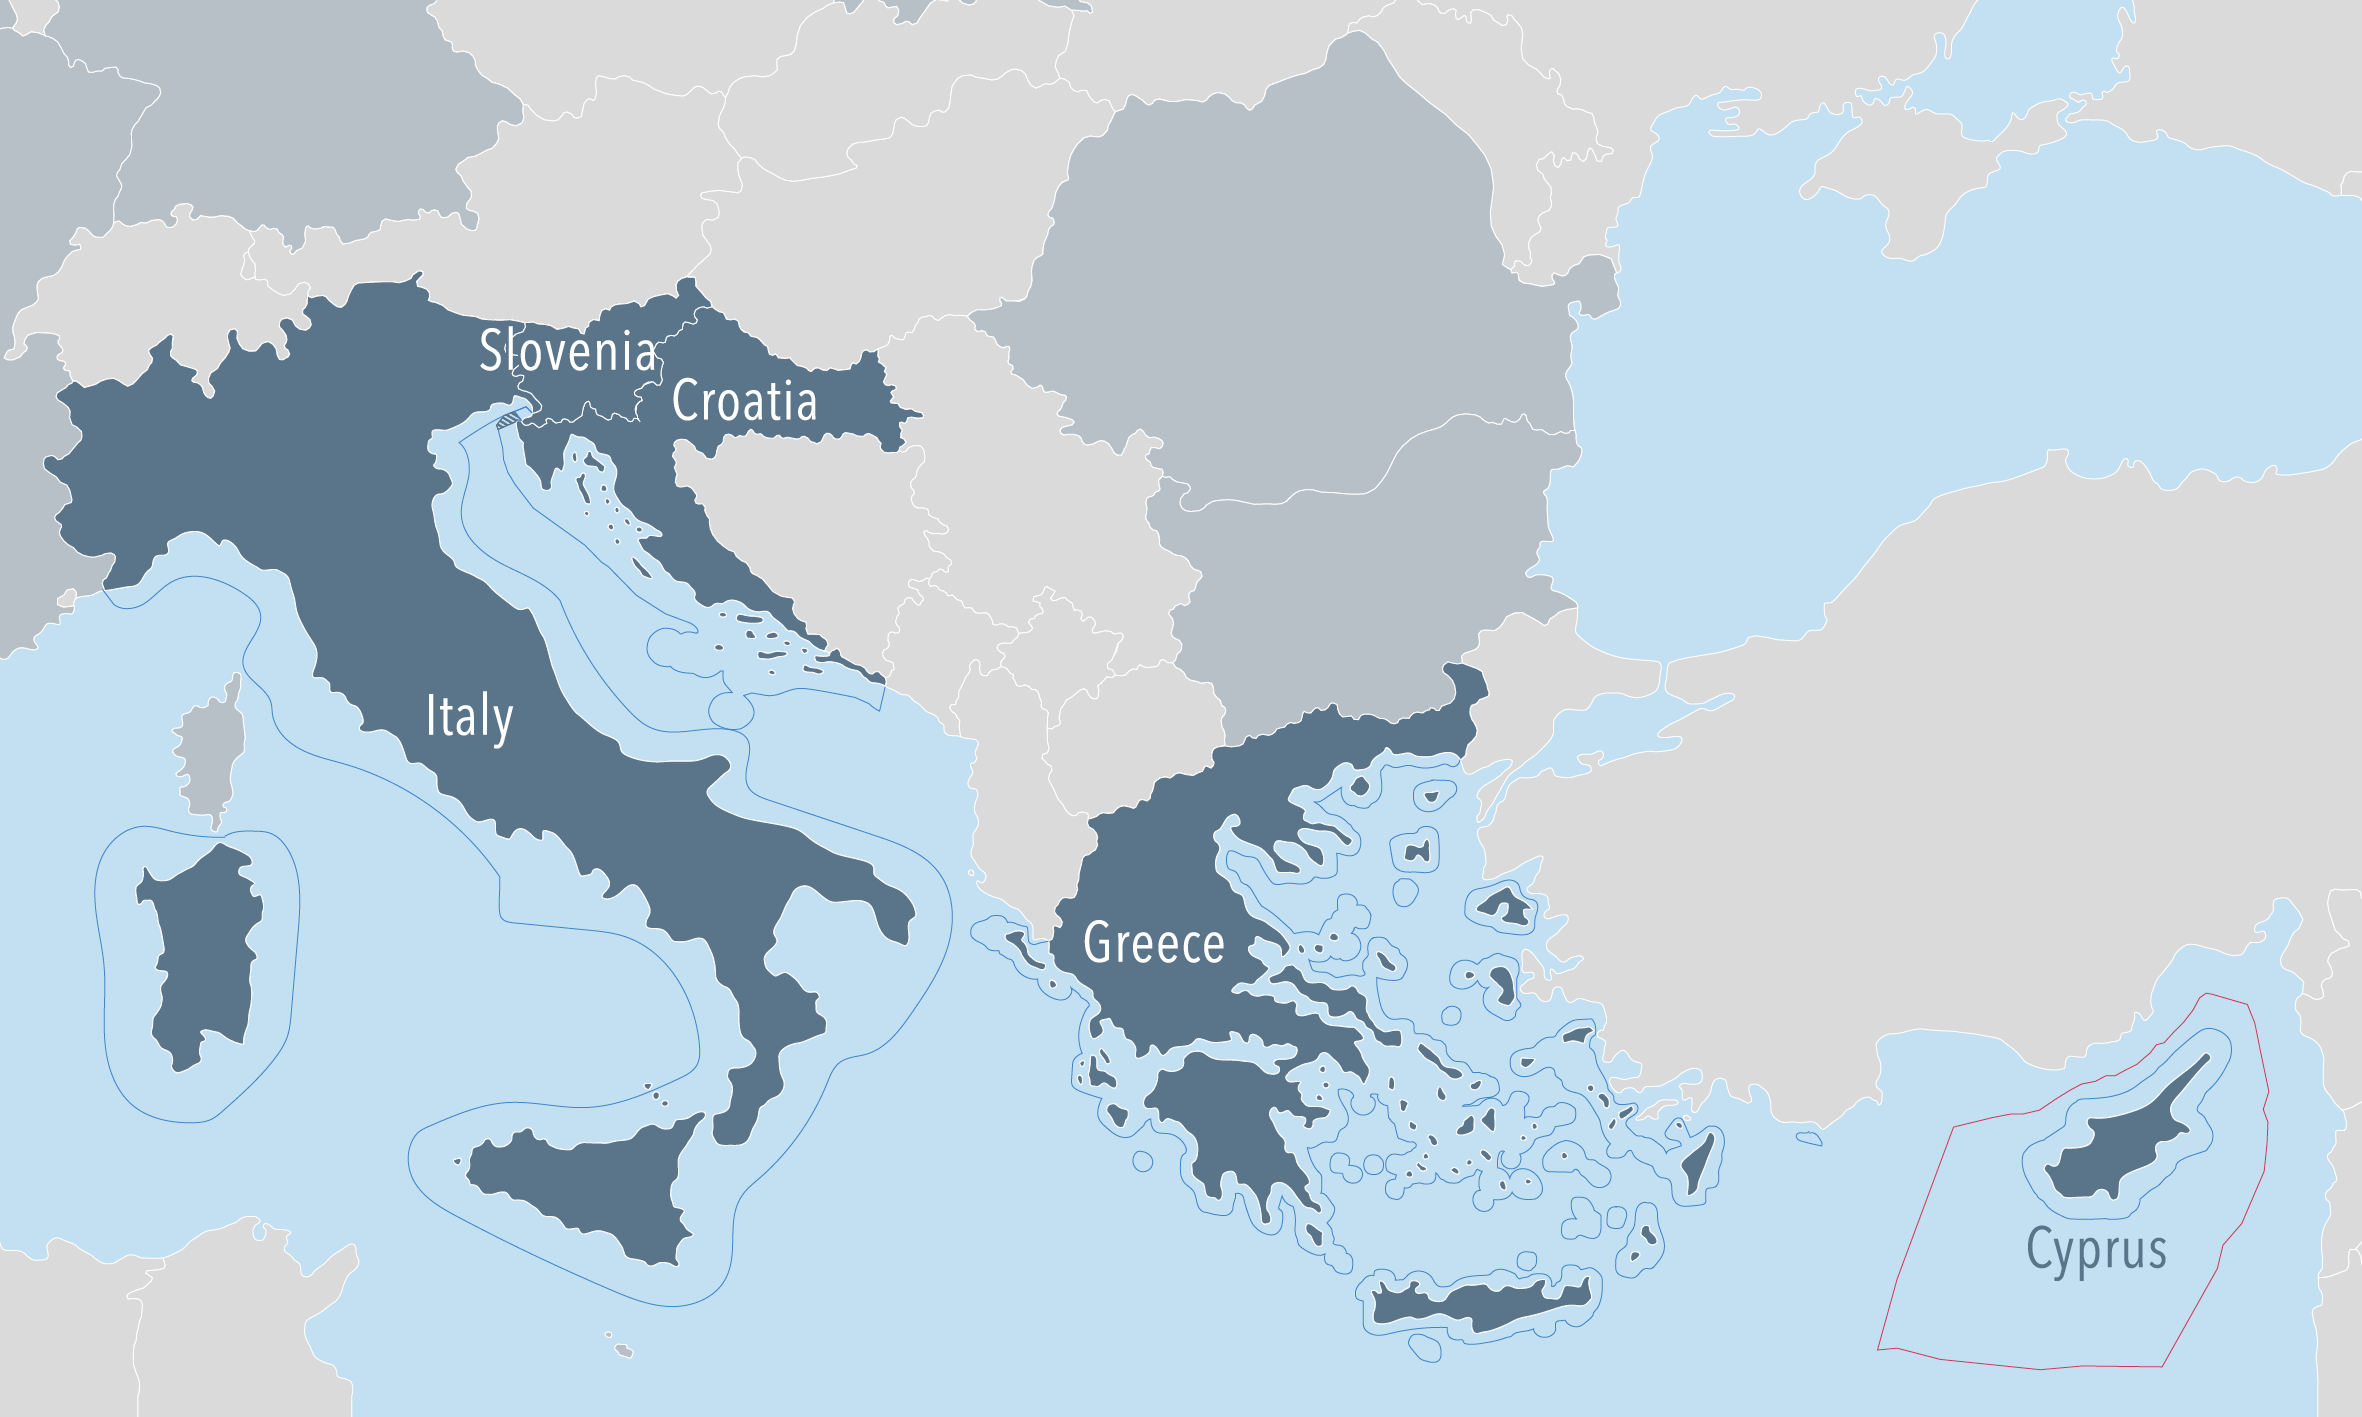 Η ενεργειακή στρατηγική της Ιταλίας στην Αν. Μεσόγειο – Διαφωτιστικό άρθρο Ιταλού αξκού ε.α.